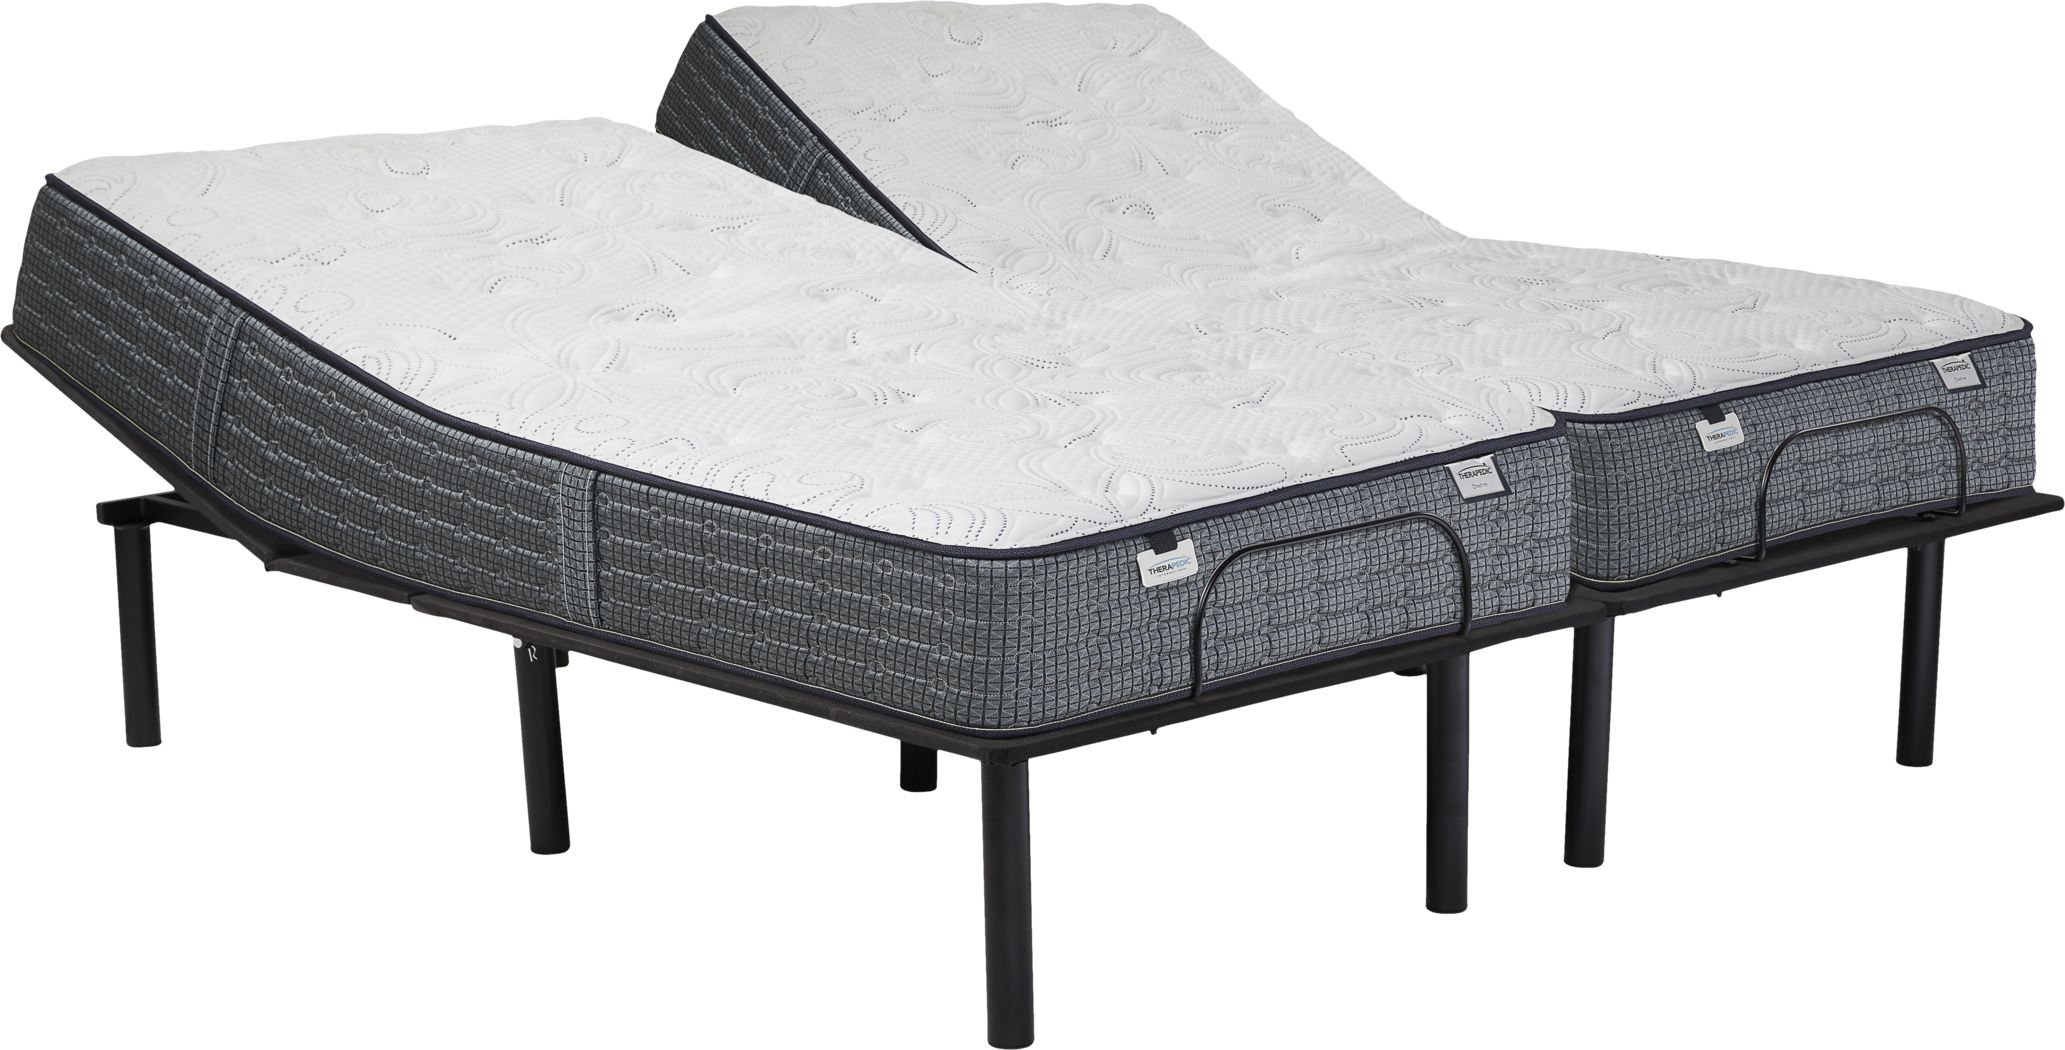 split king adjustable beds and mattresses